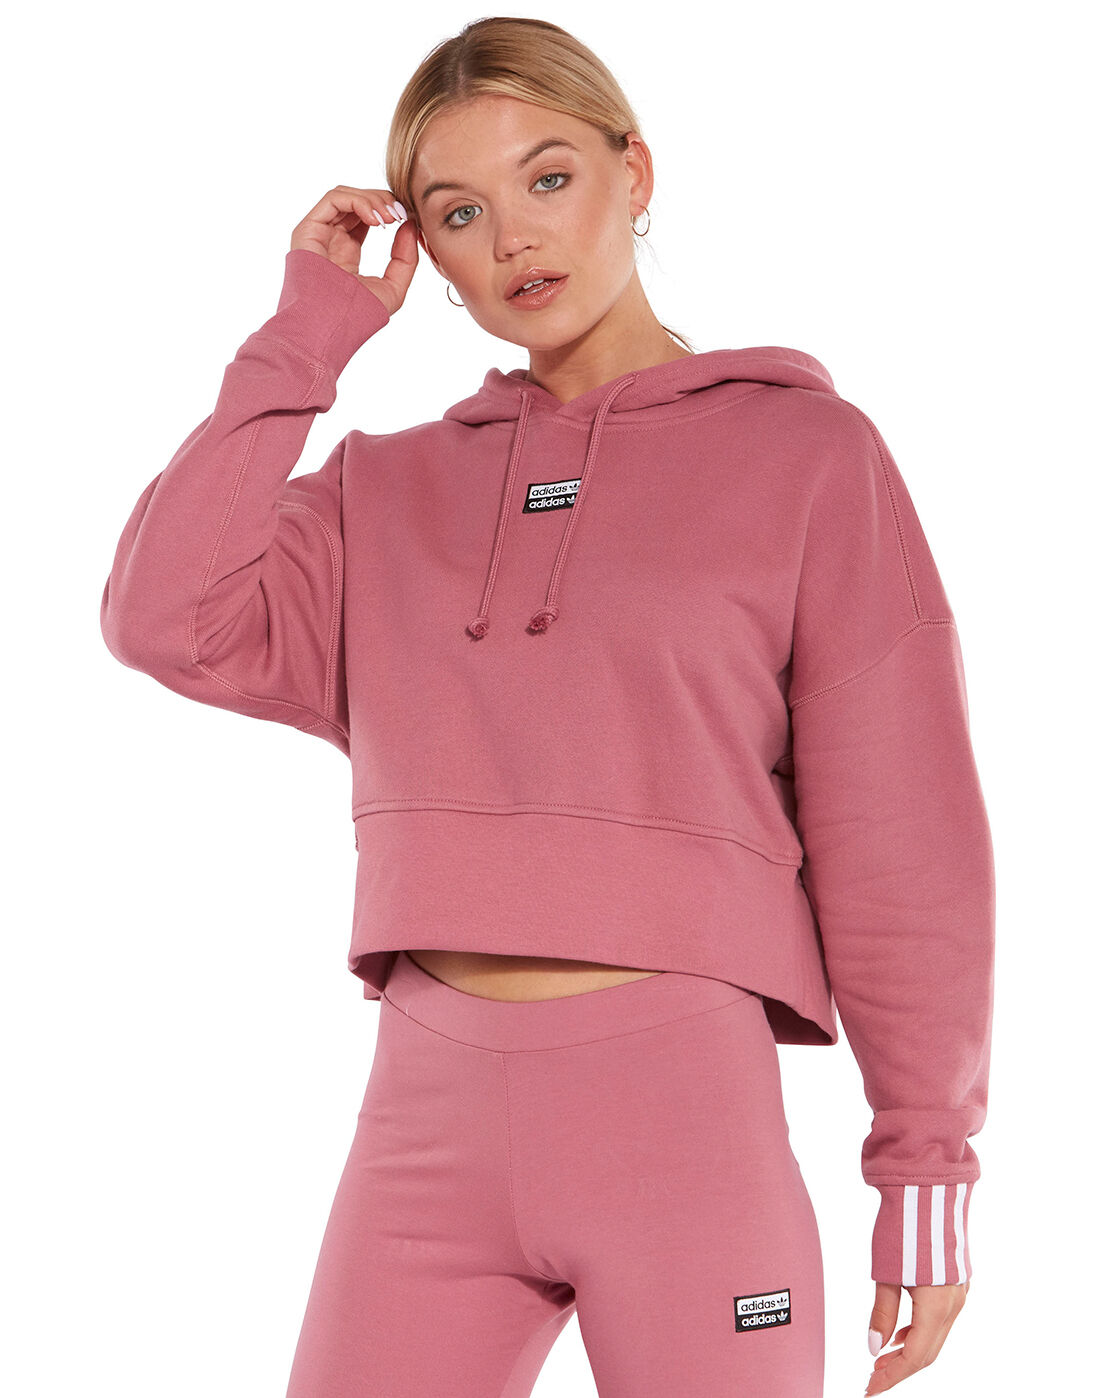 adidas hoodie pink women